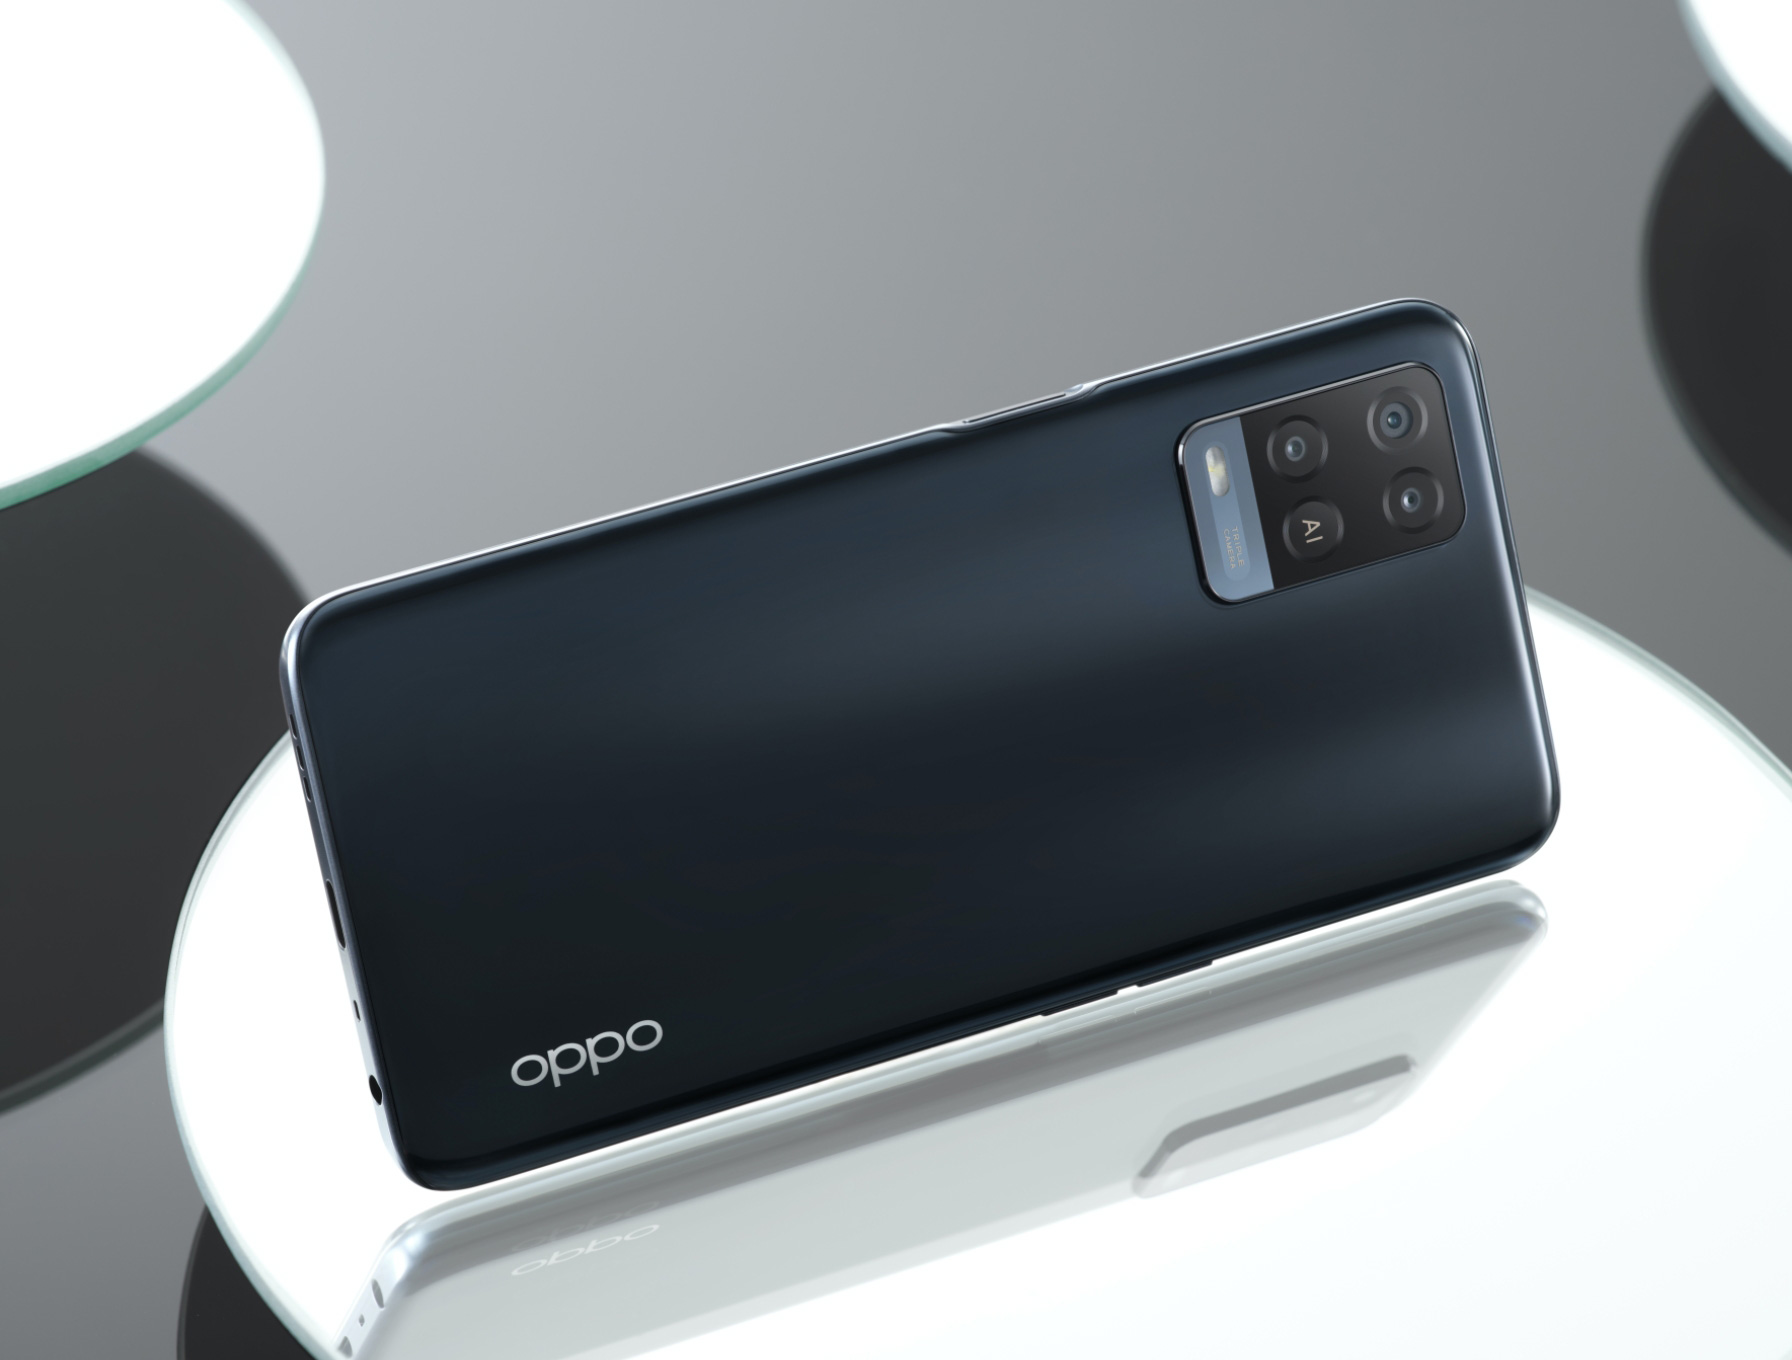 वायरल न्यूज़! Oppo ला रहा बहुत ही सस्ता Smartphone, लॉन्च से पहले Leak हुए फीचर्स; डिजाइन भी आया सामने